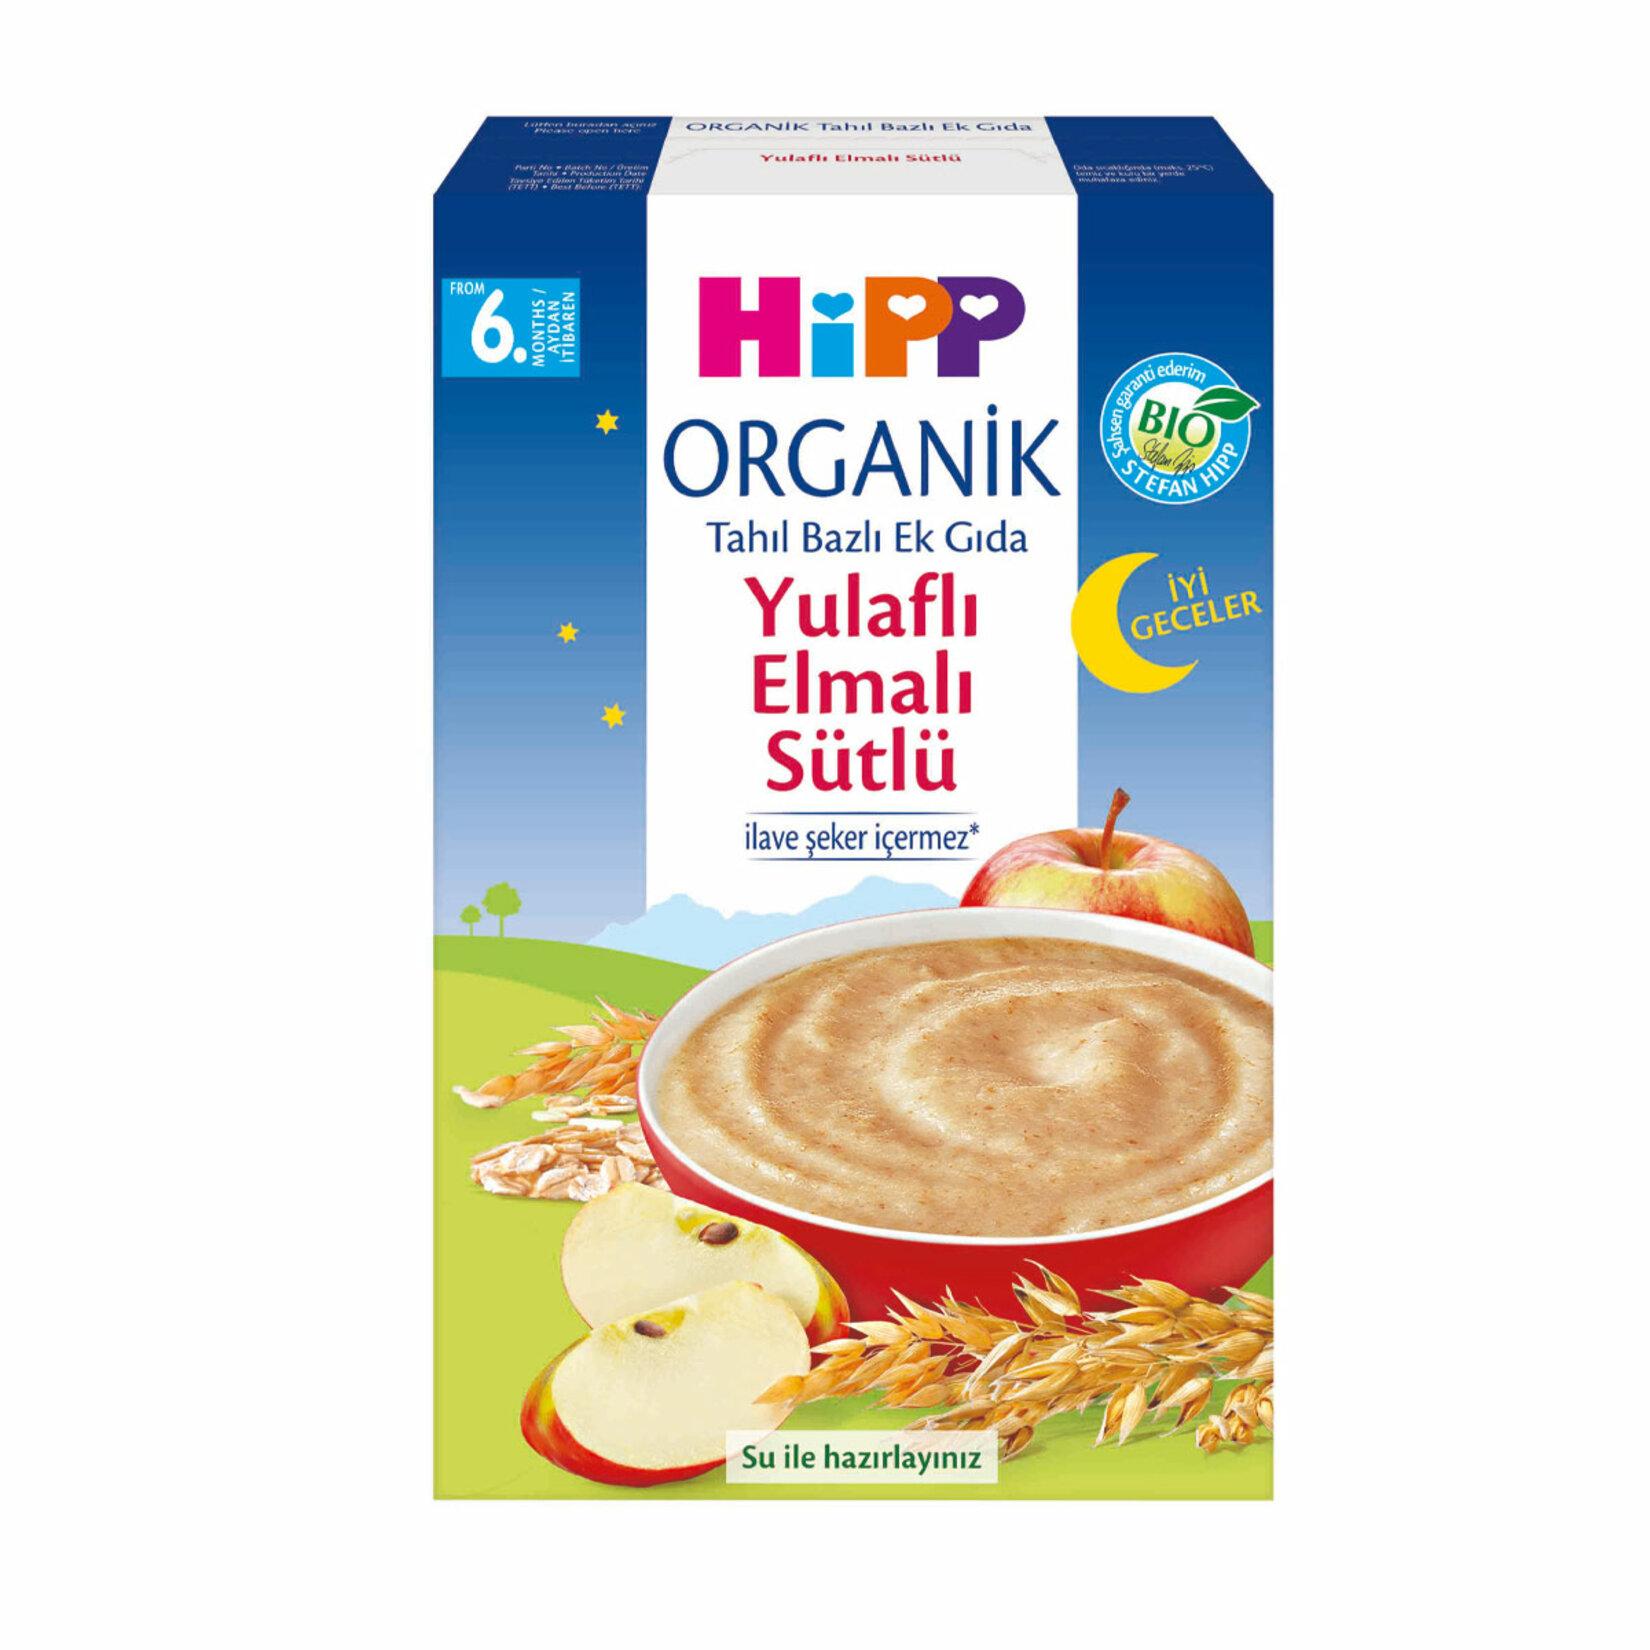 Hipp Organik İyi Geceler Yulaflı Elmalı Sütlü Kaşık Mama 250 gr 2'li Paket